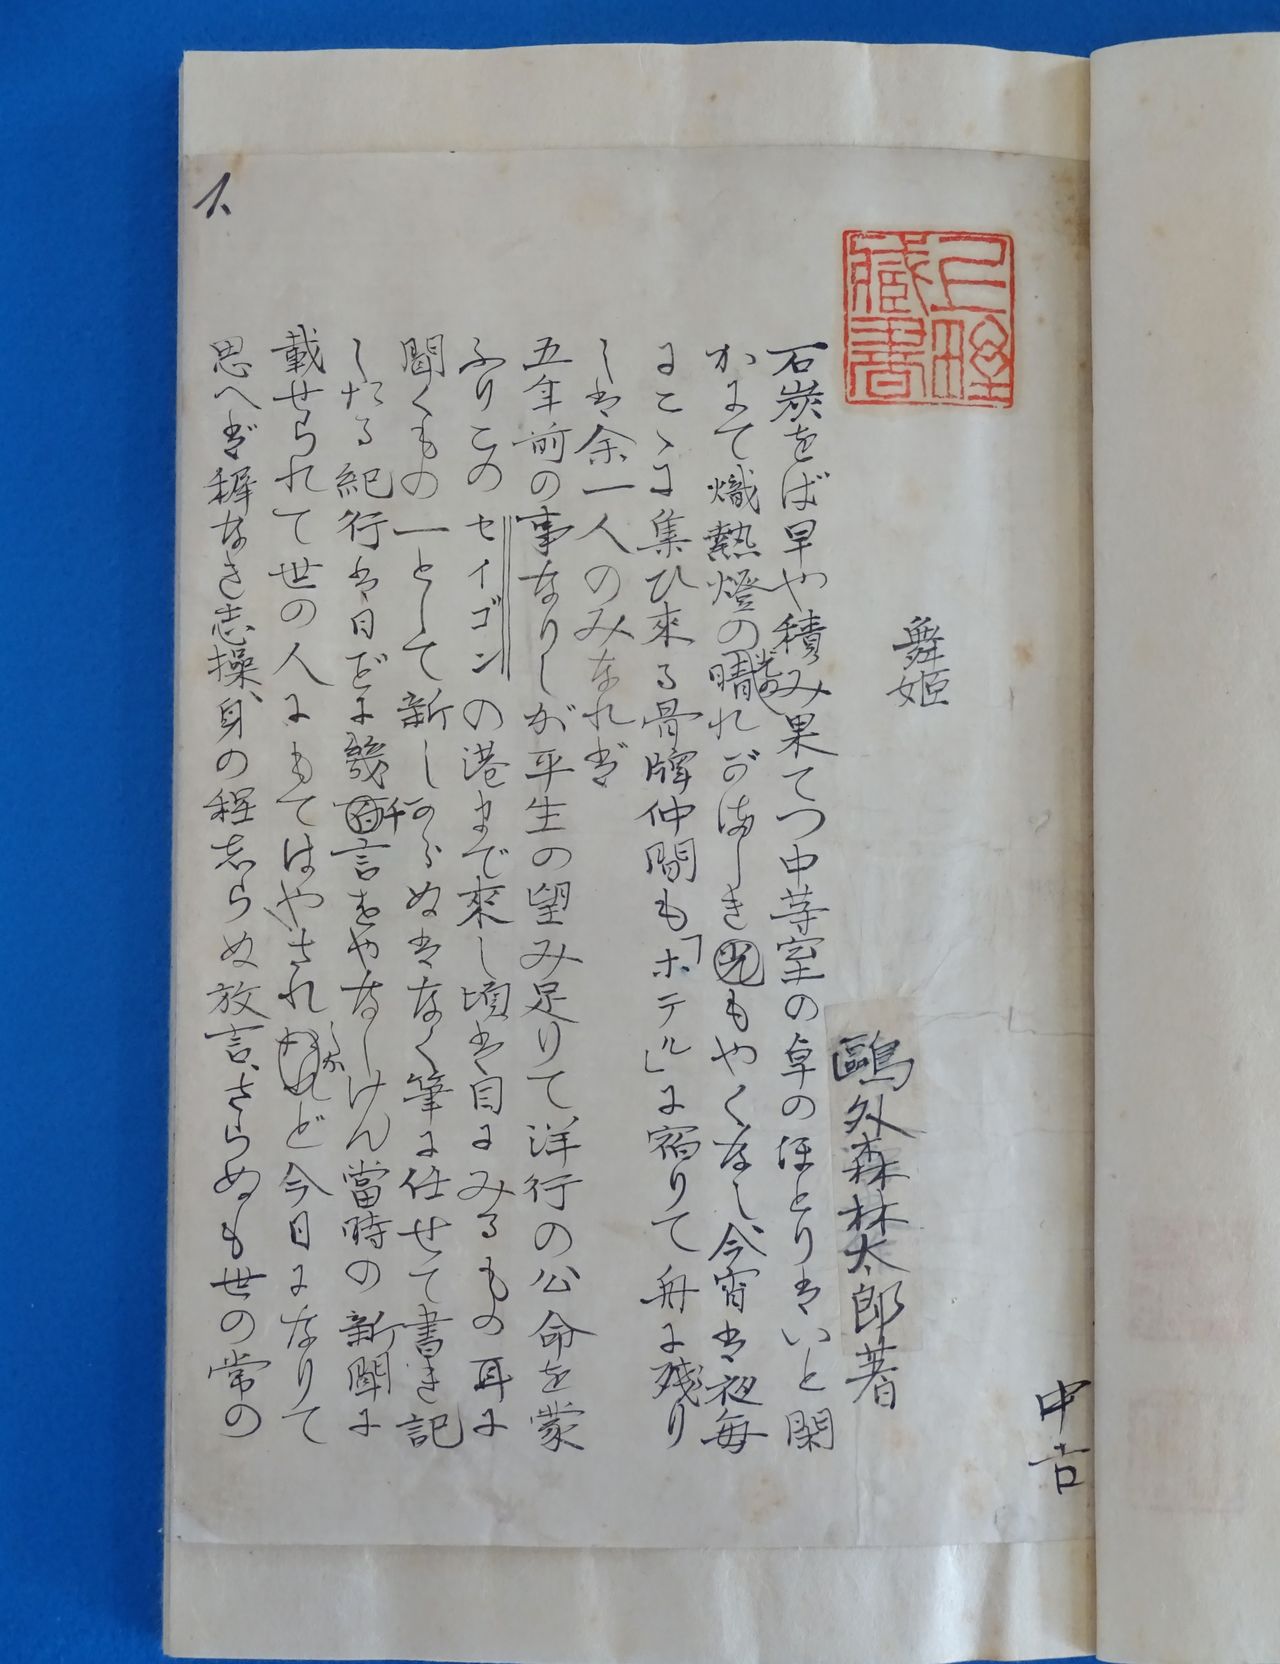 Черновик рукописи Огая «Танцовщица», который был найден на рынке старых книг в 2015 году и привлёк внимание СМИ (Jiji Press)